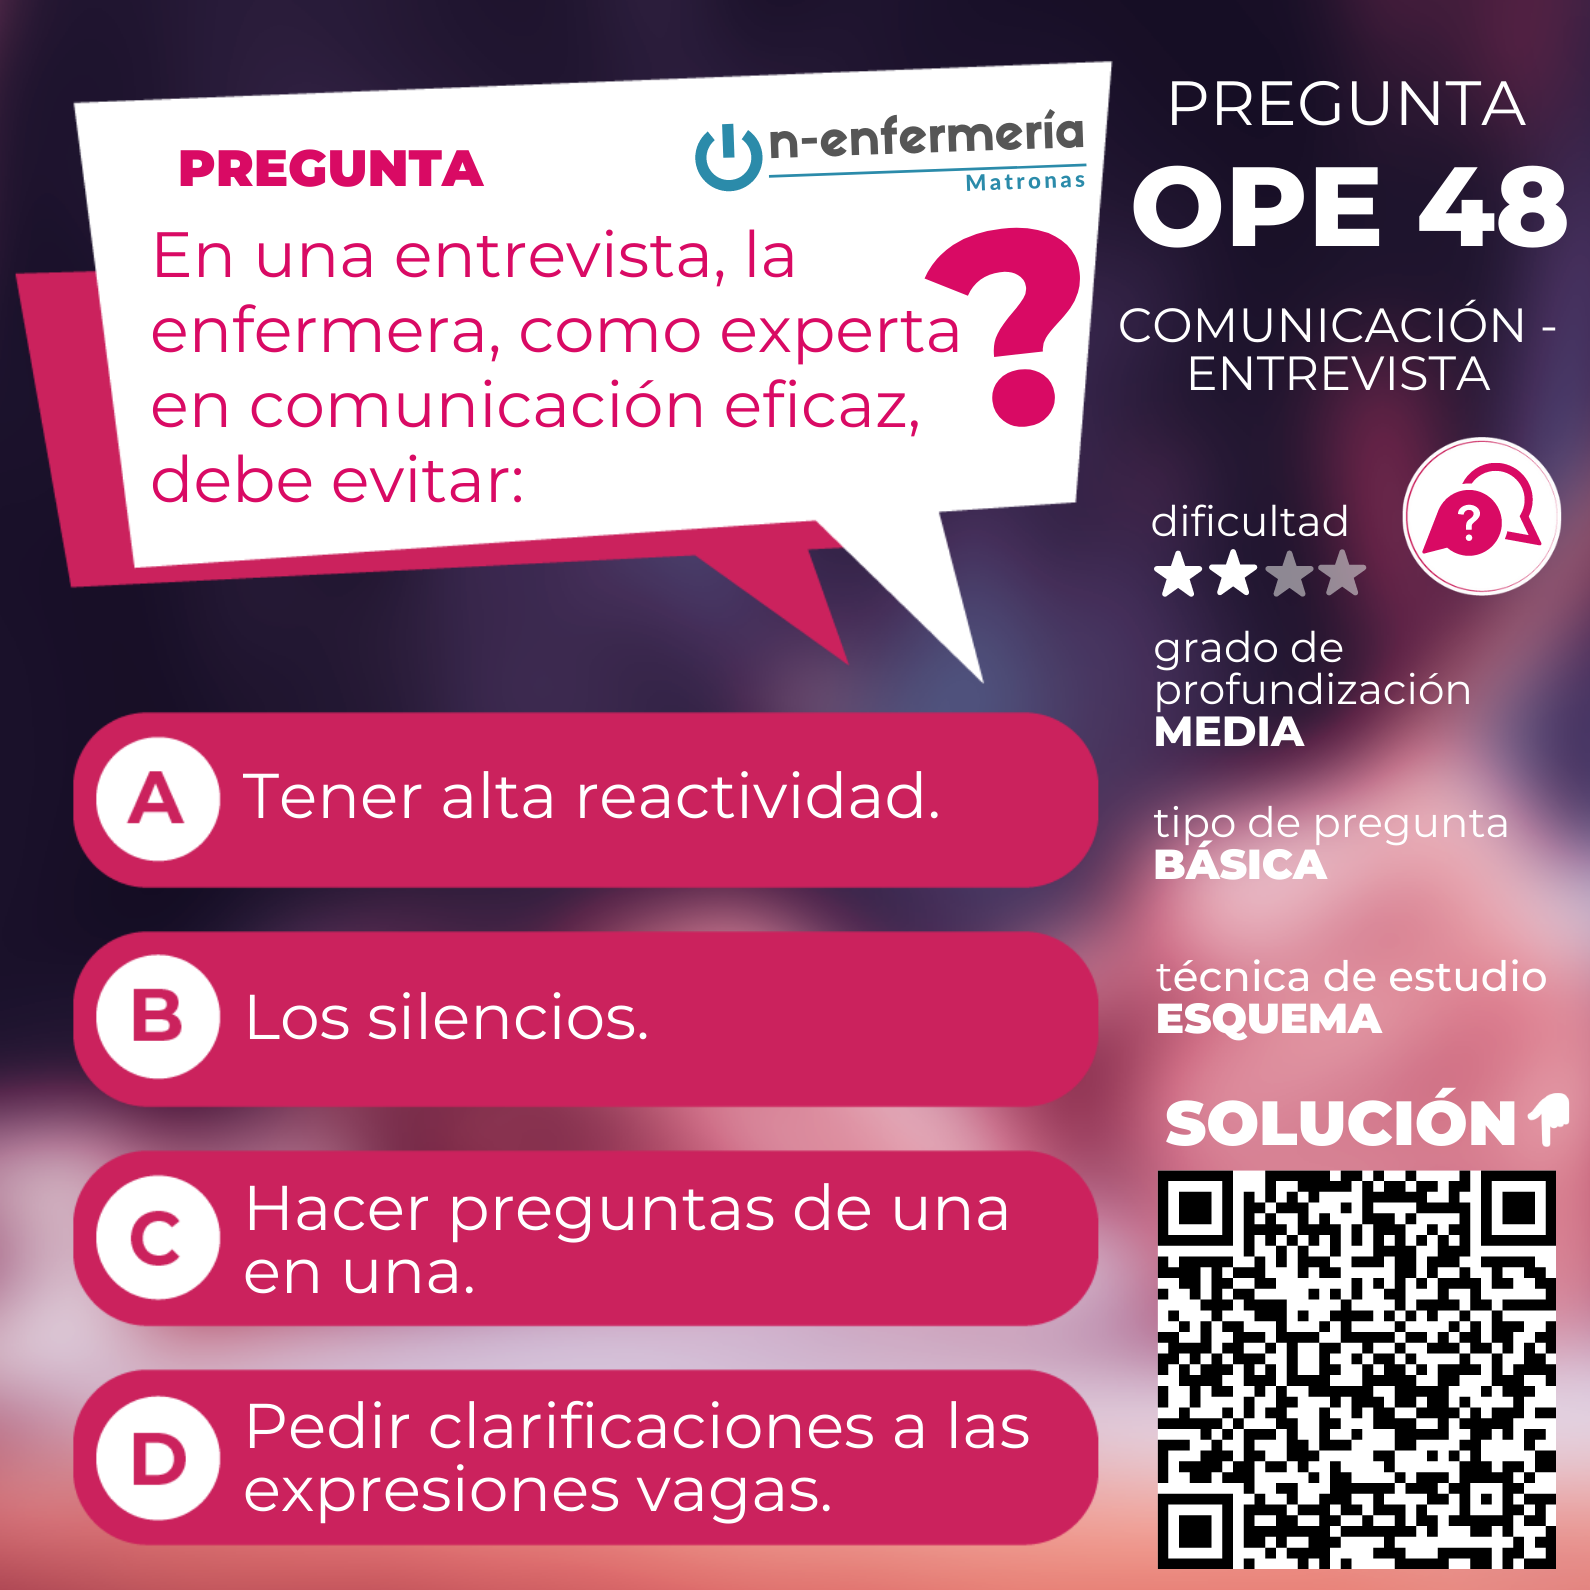 Pregunta examen OPE Matronas nº 48 Comunicación - Entrevista